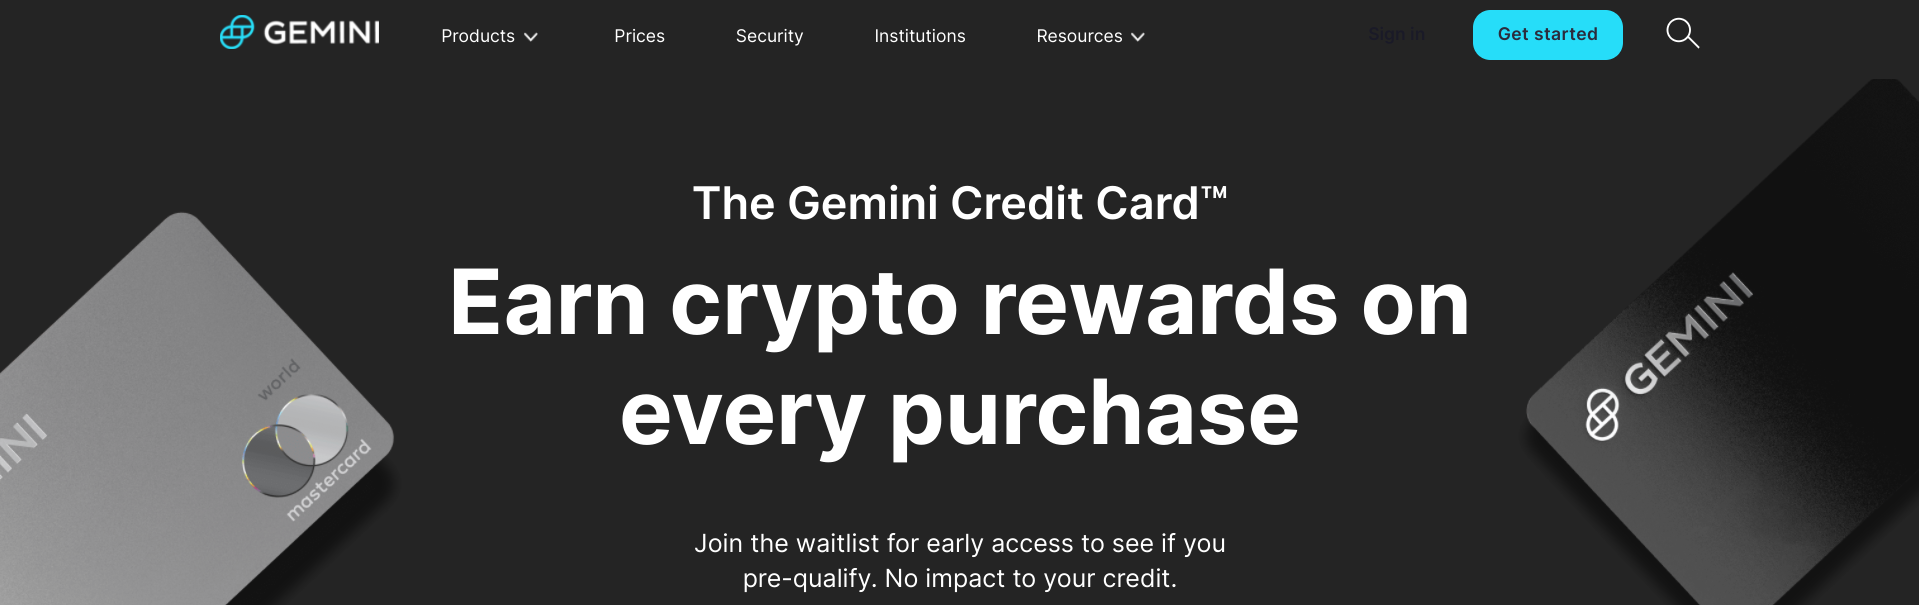 Gemini review: Gemini credit card